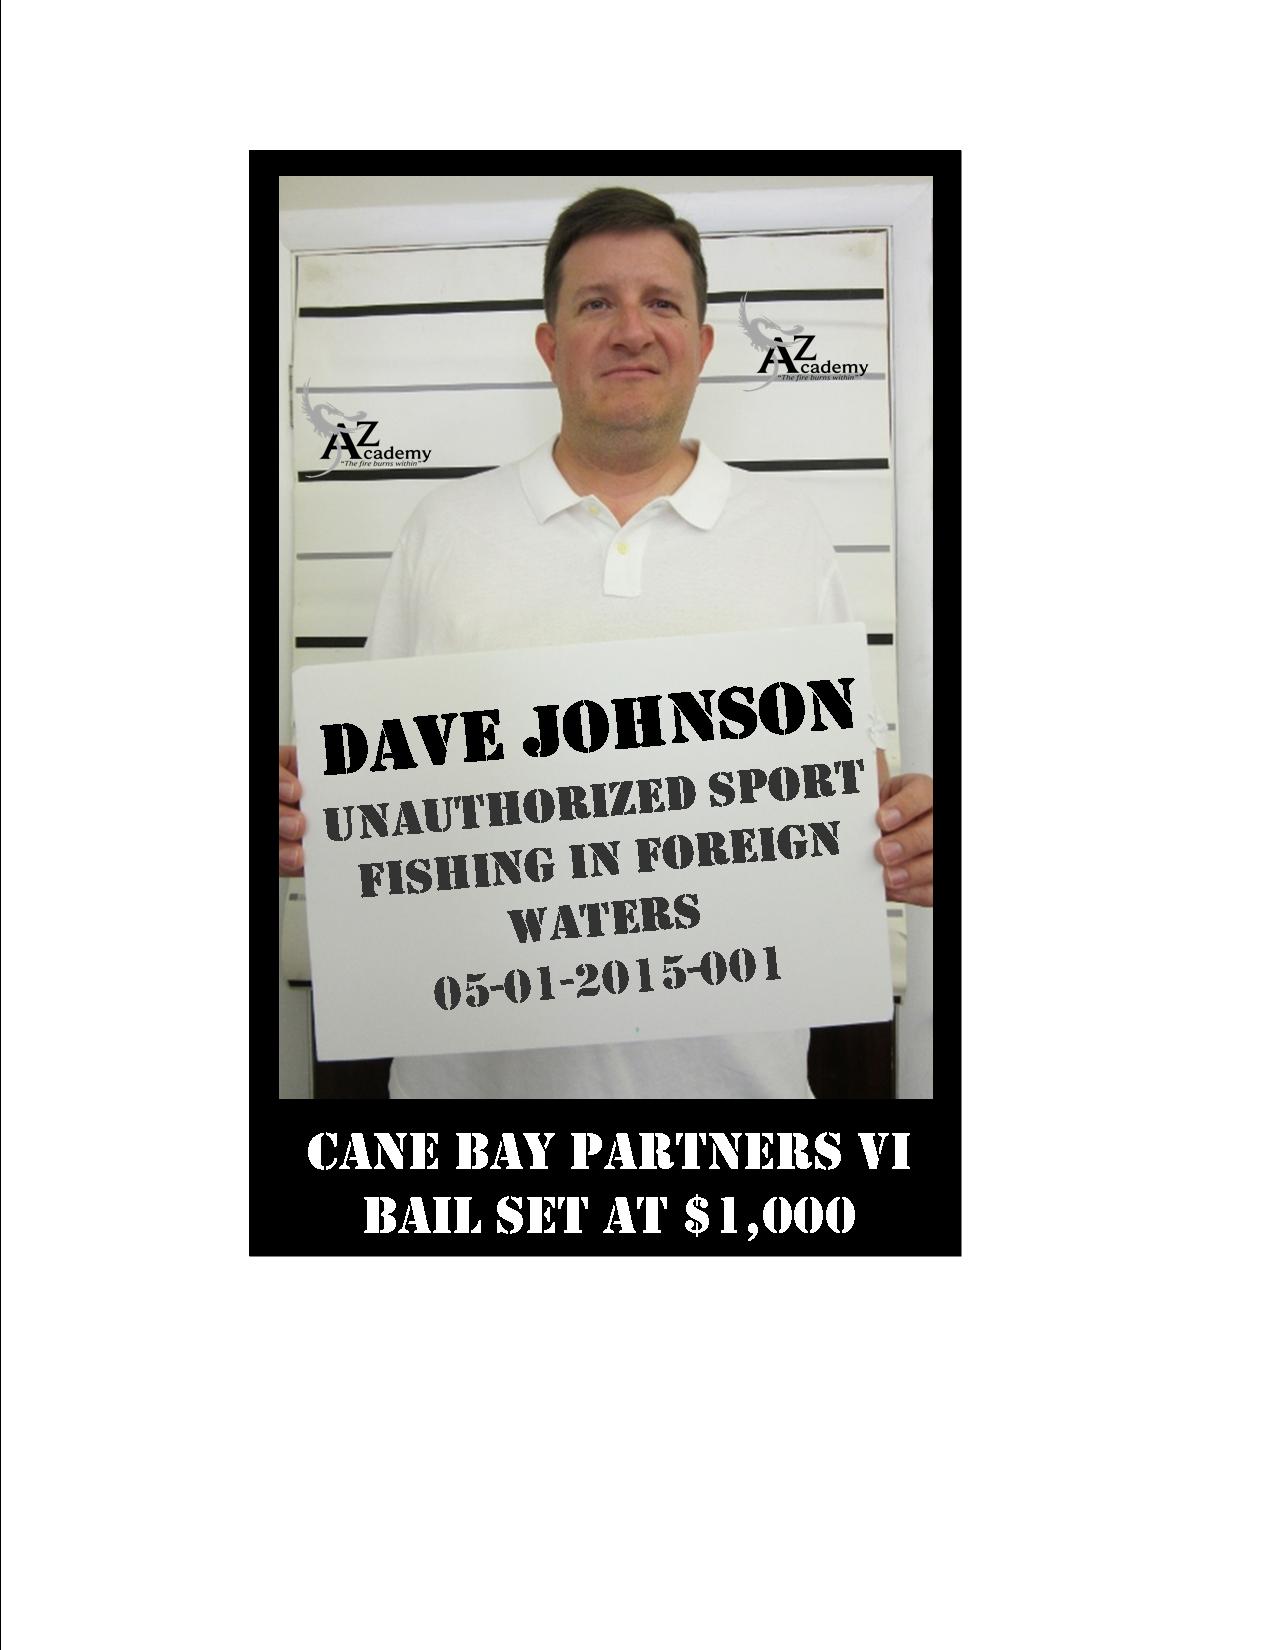 David Johnson “Arrested” For AZ Academy’s Jail Or Bail Fundraiser